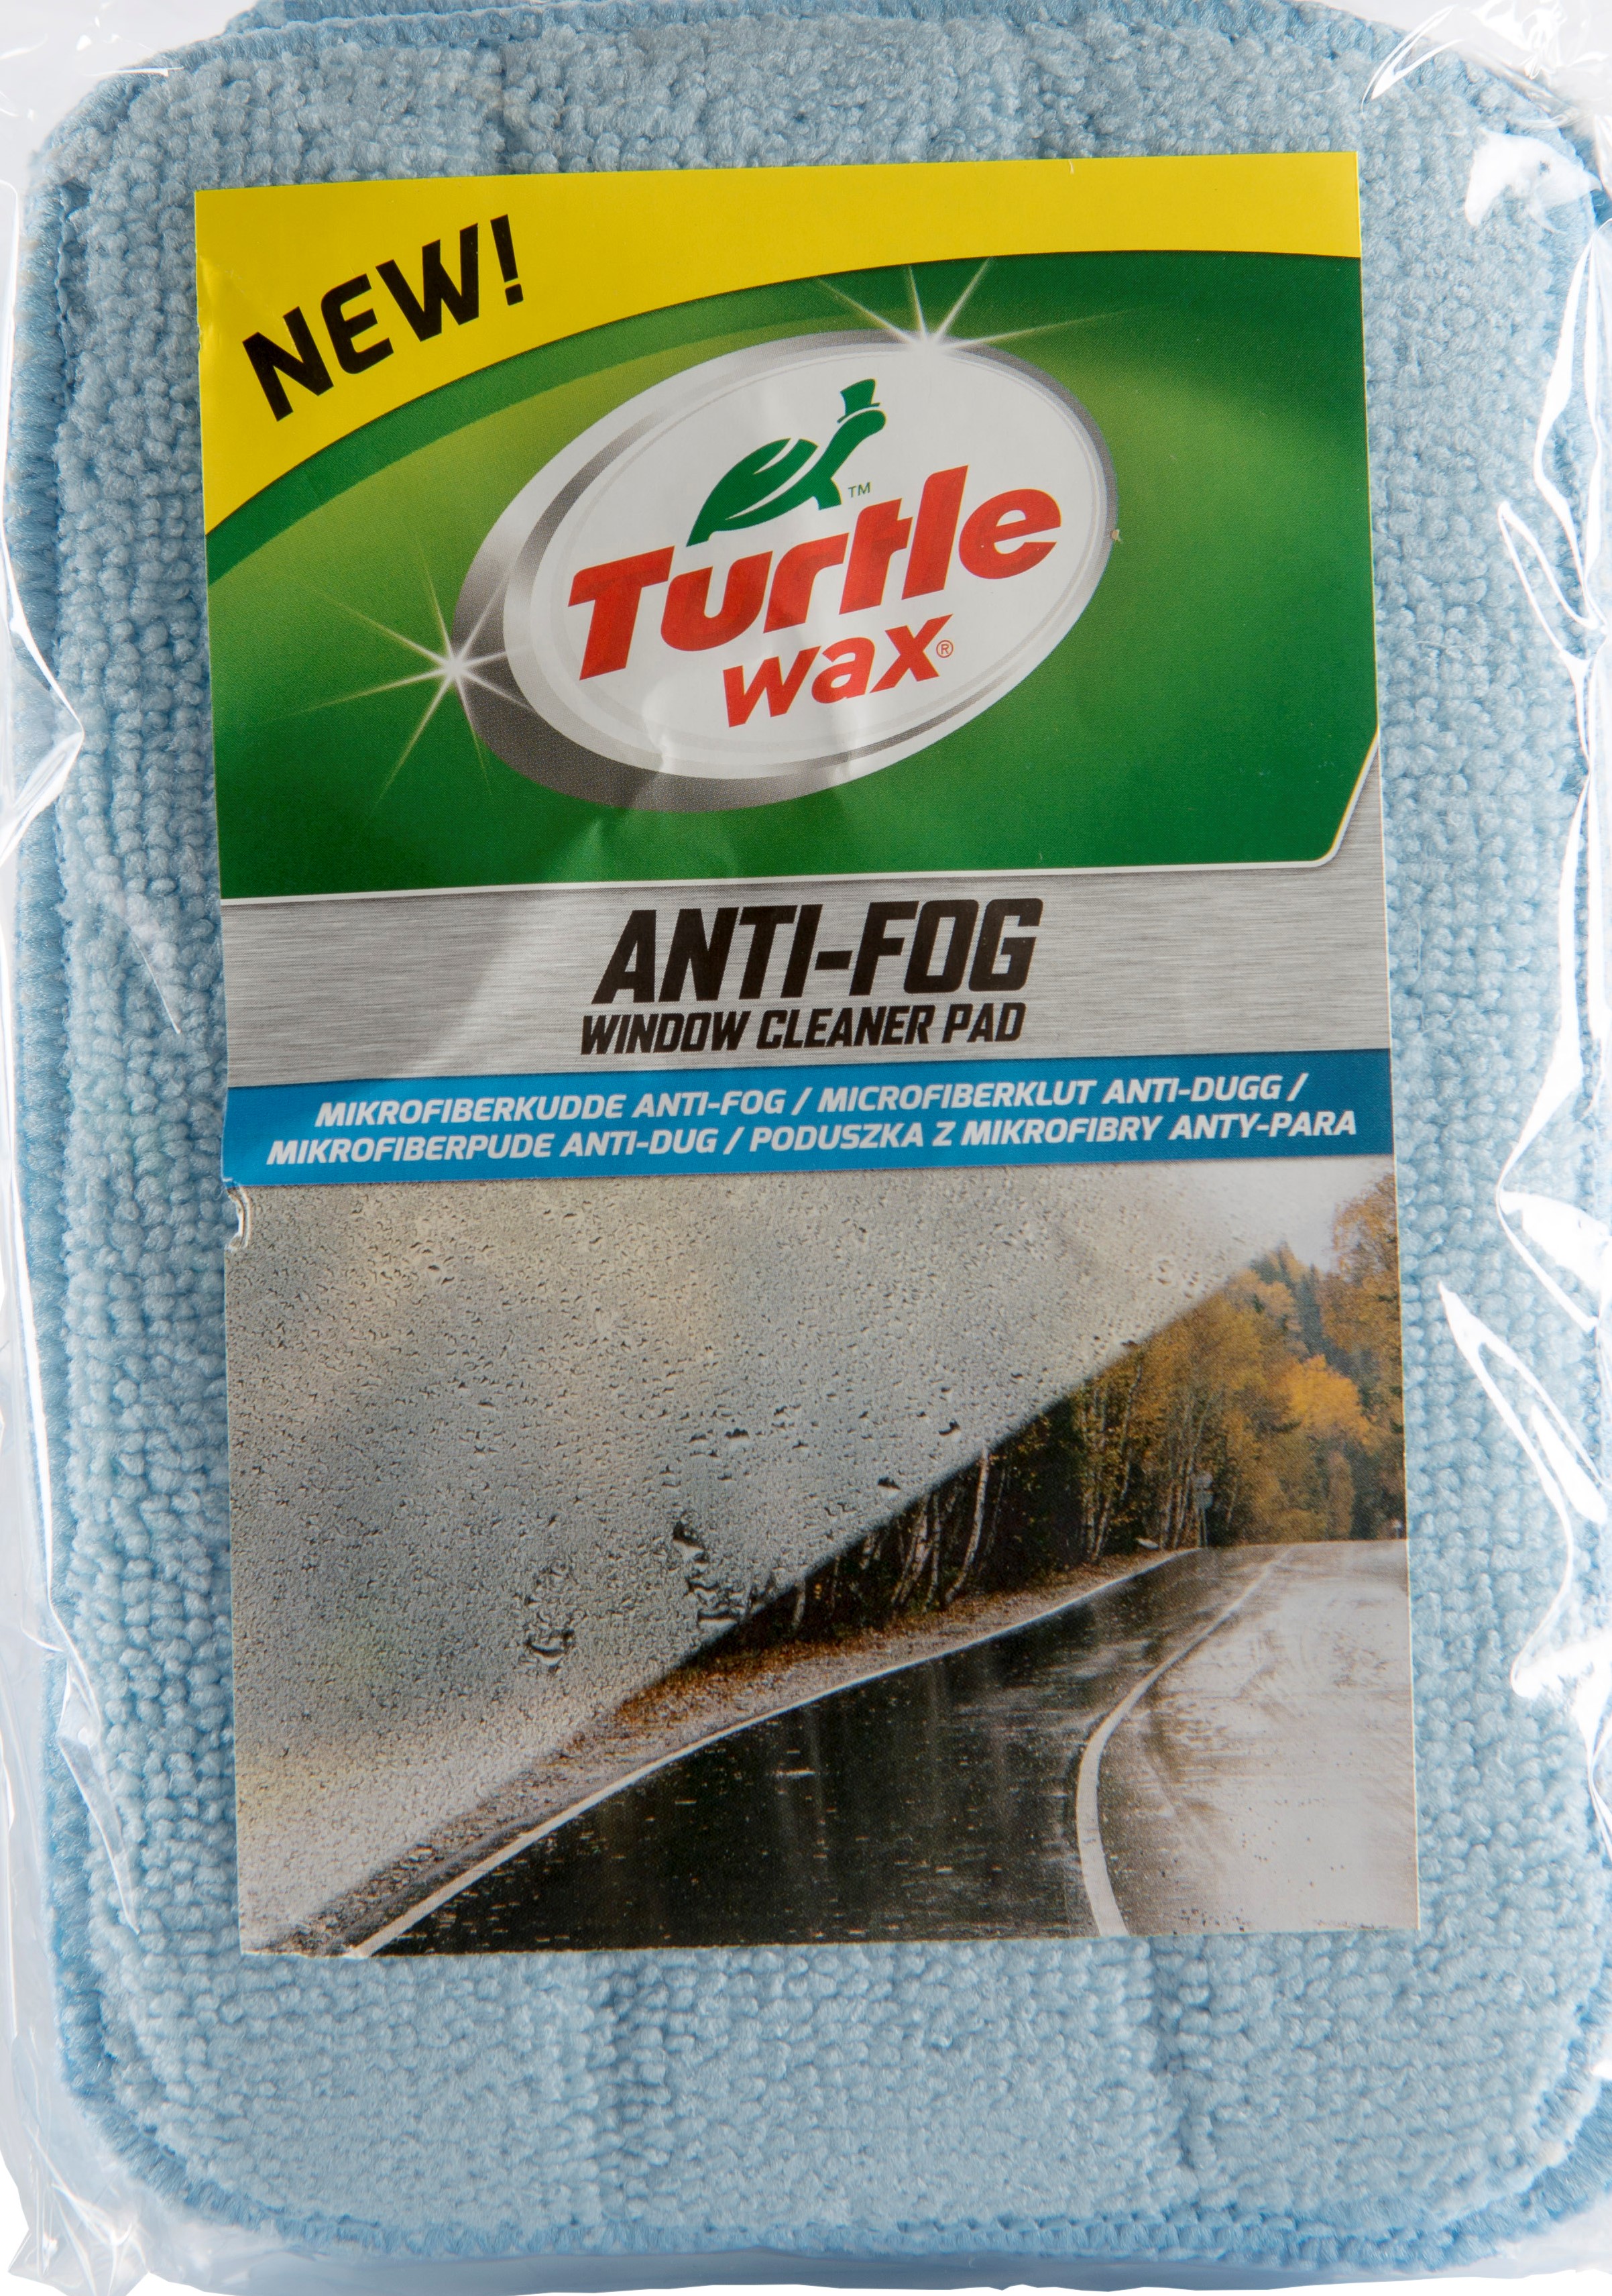 Billede af Turtle Wax Anti-Dug pads til vinduer 6 stk i pakken